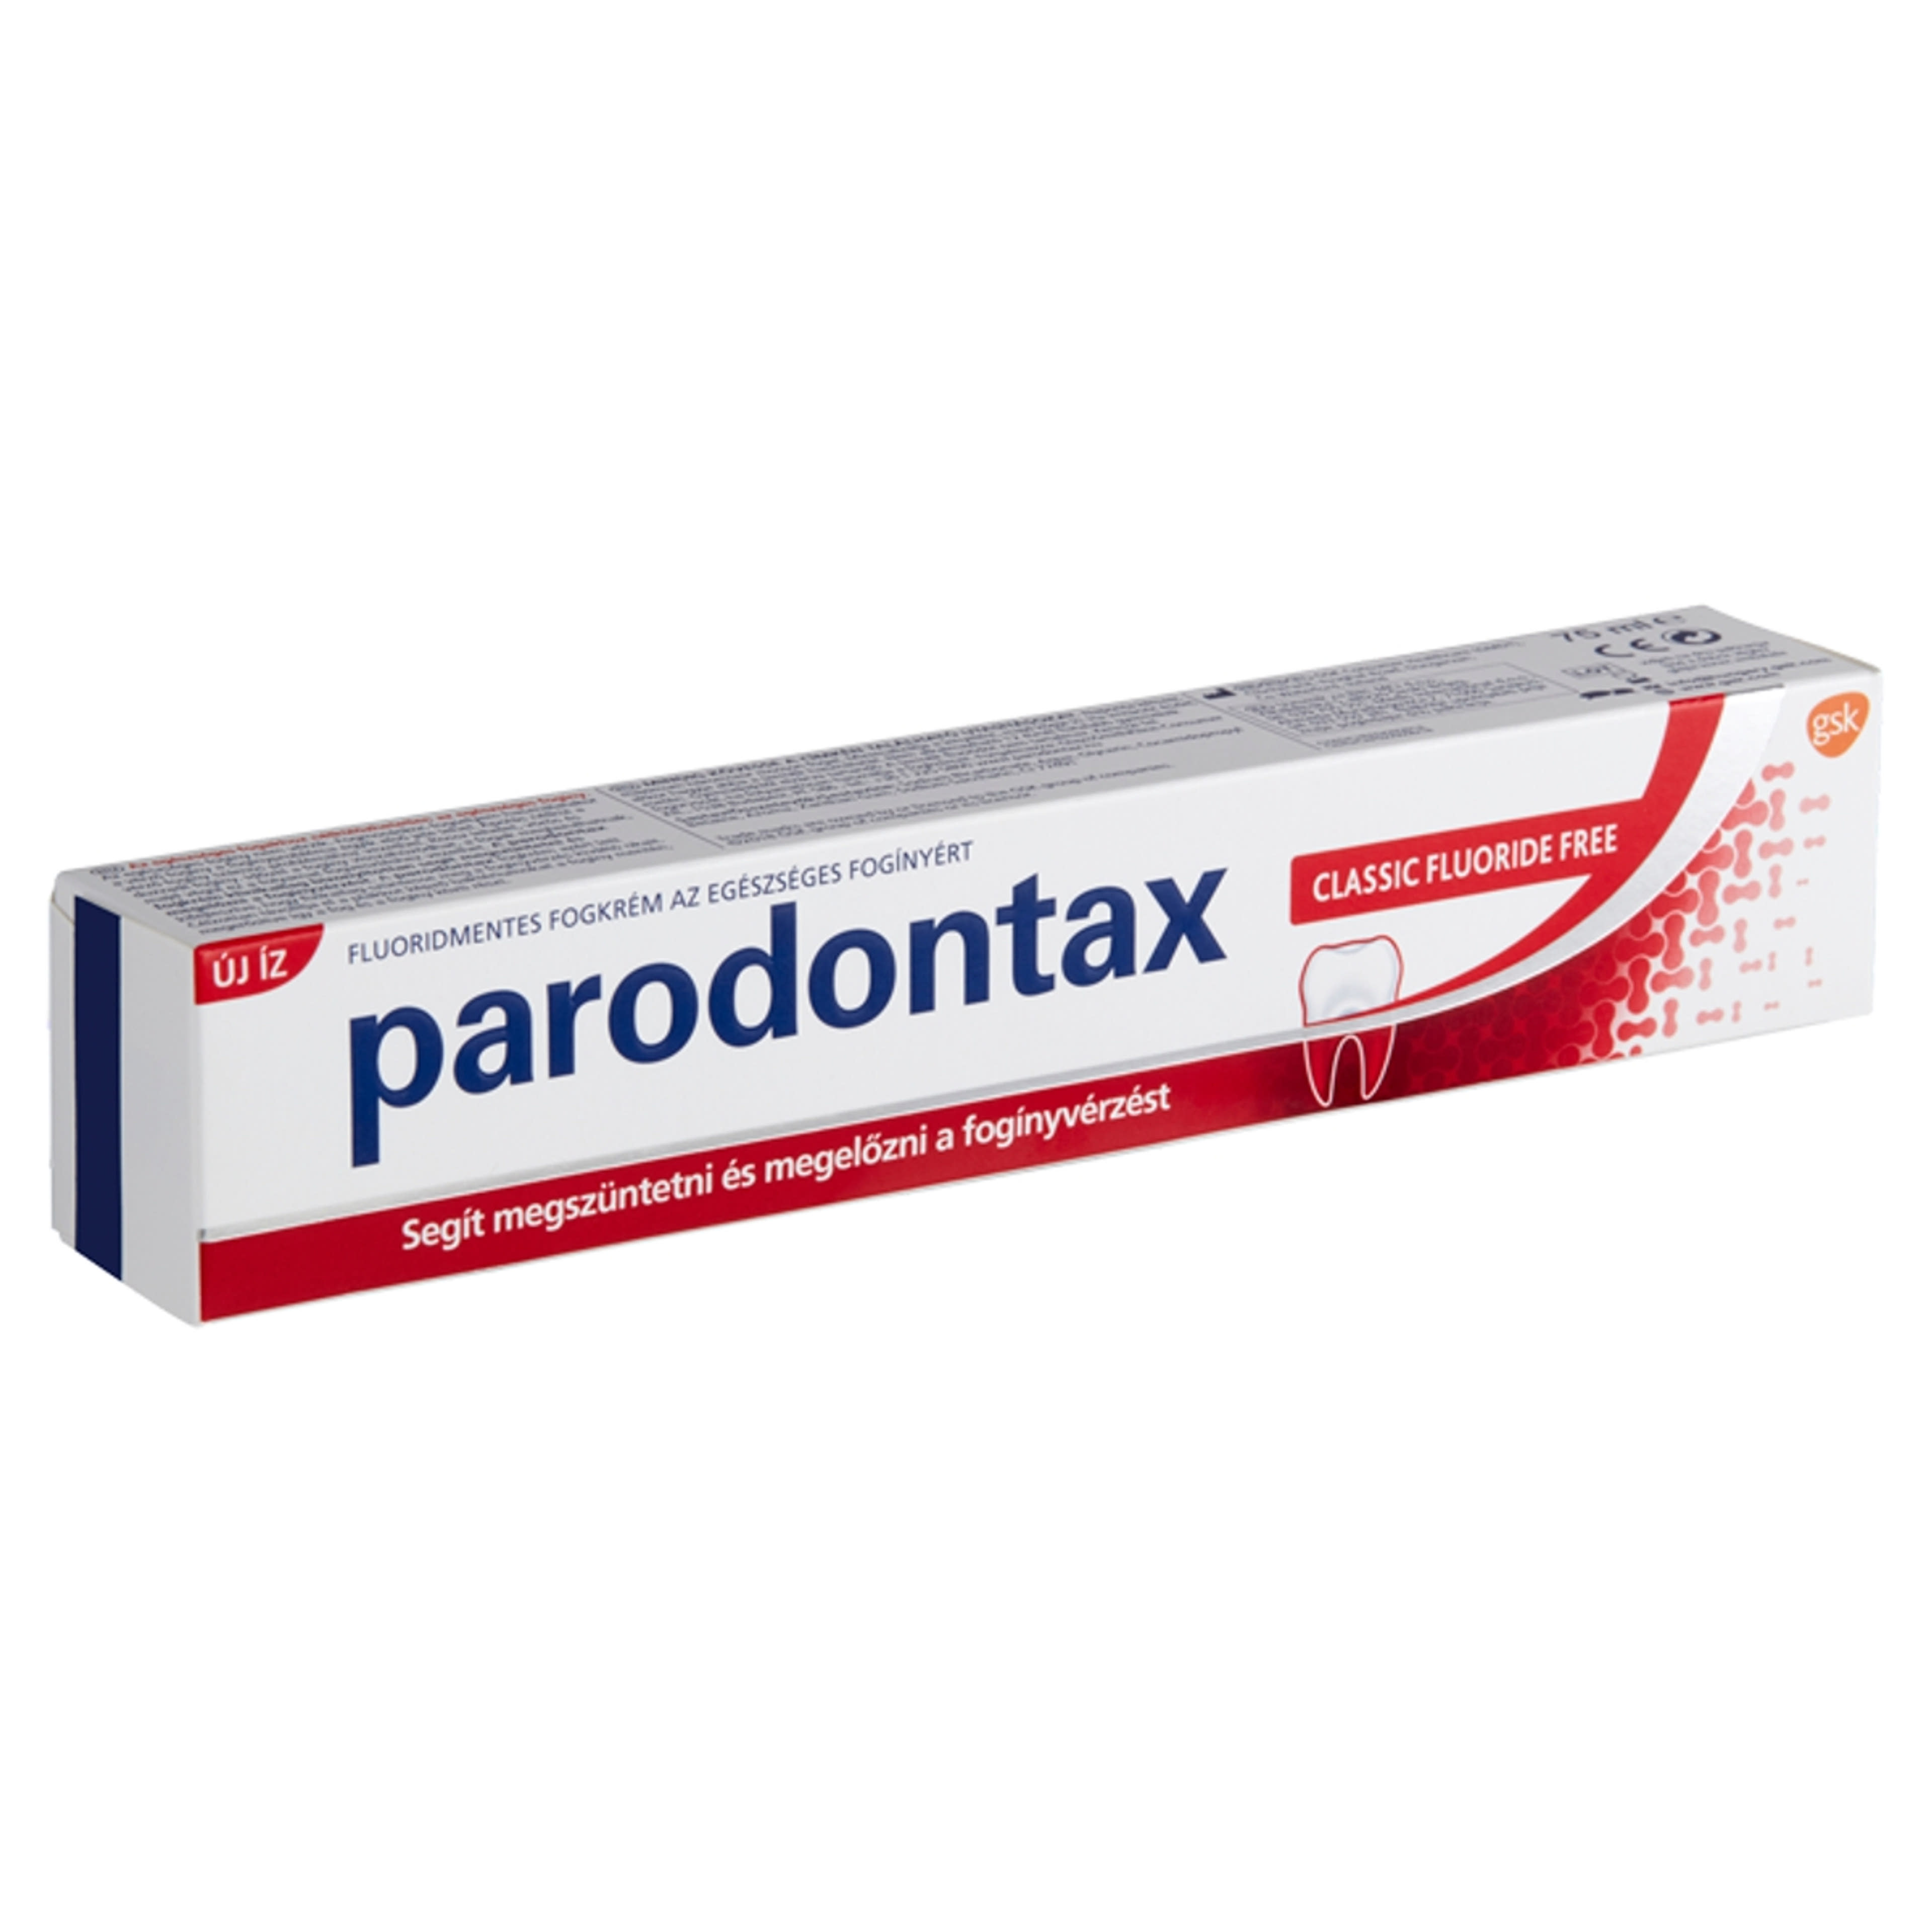 Parodontax Classic Flouridmentes fogkrém - 75 ml-3